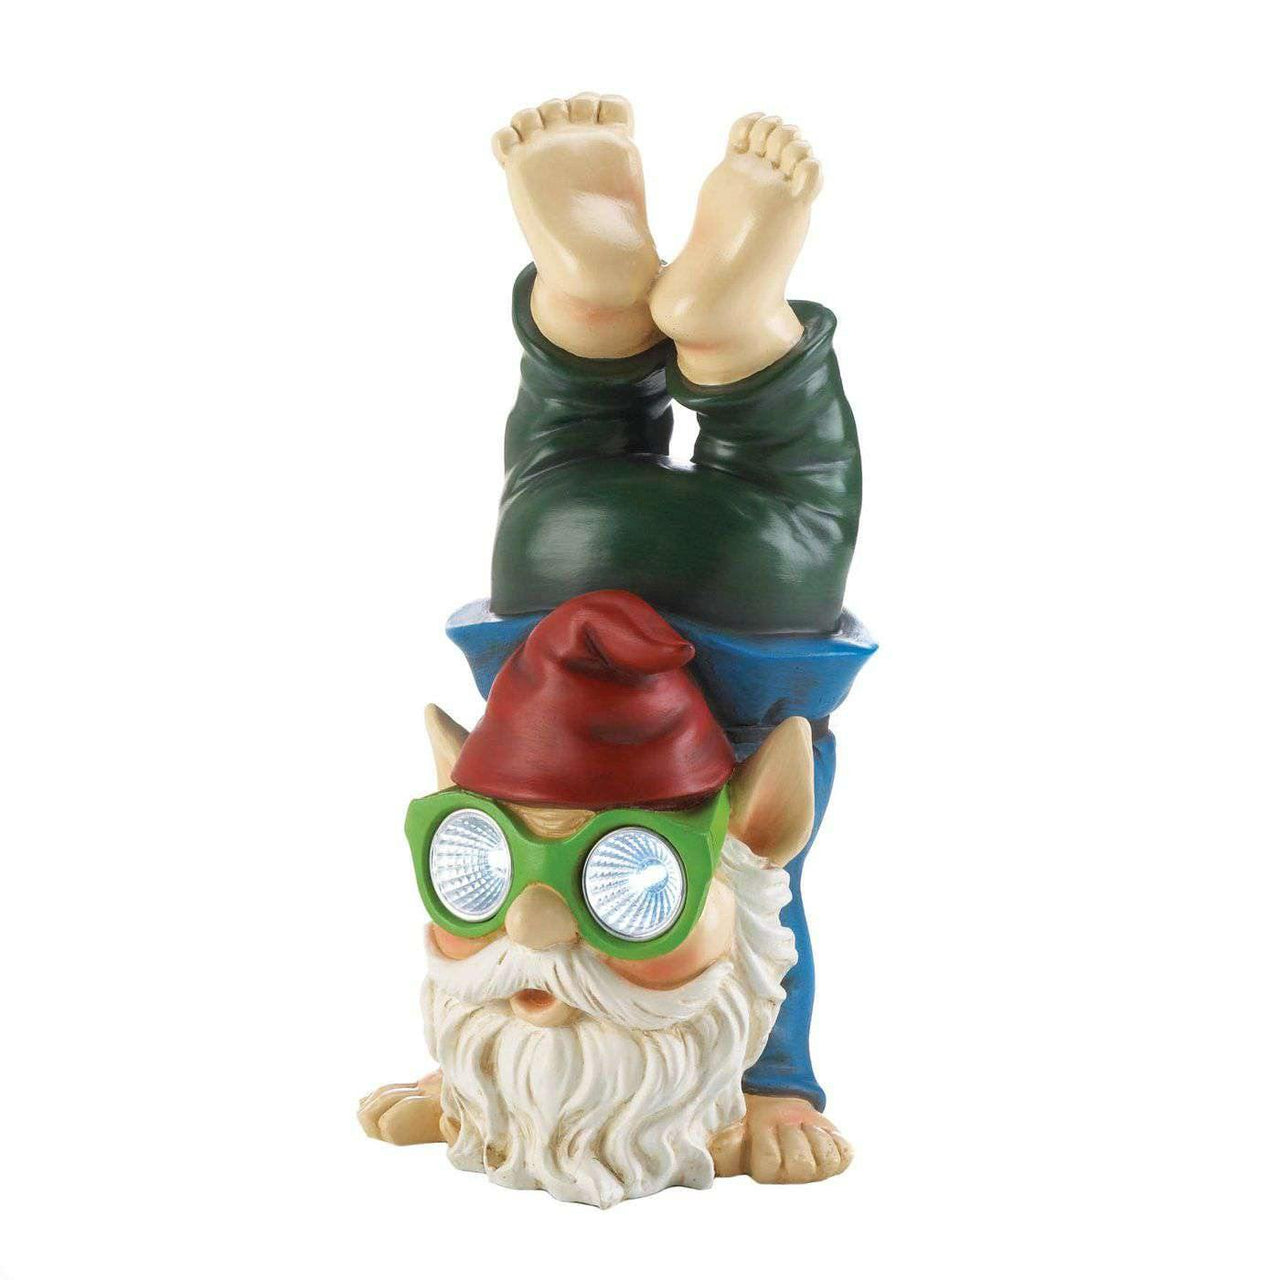 Handstand Solar Gnome Figurine - The Fox Decor